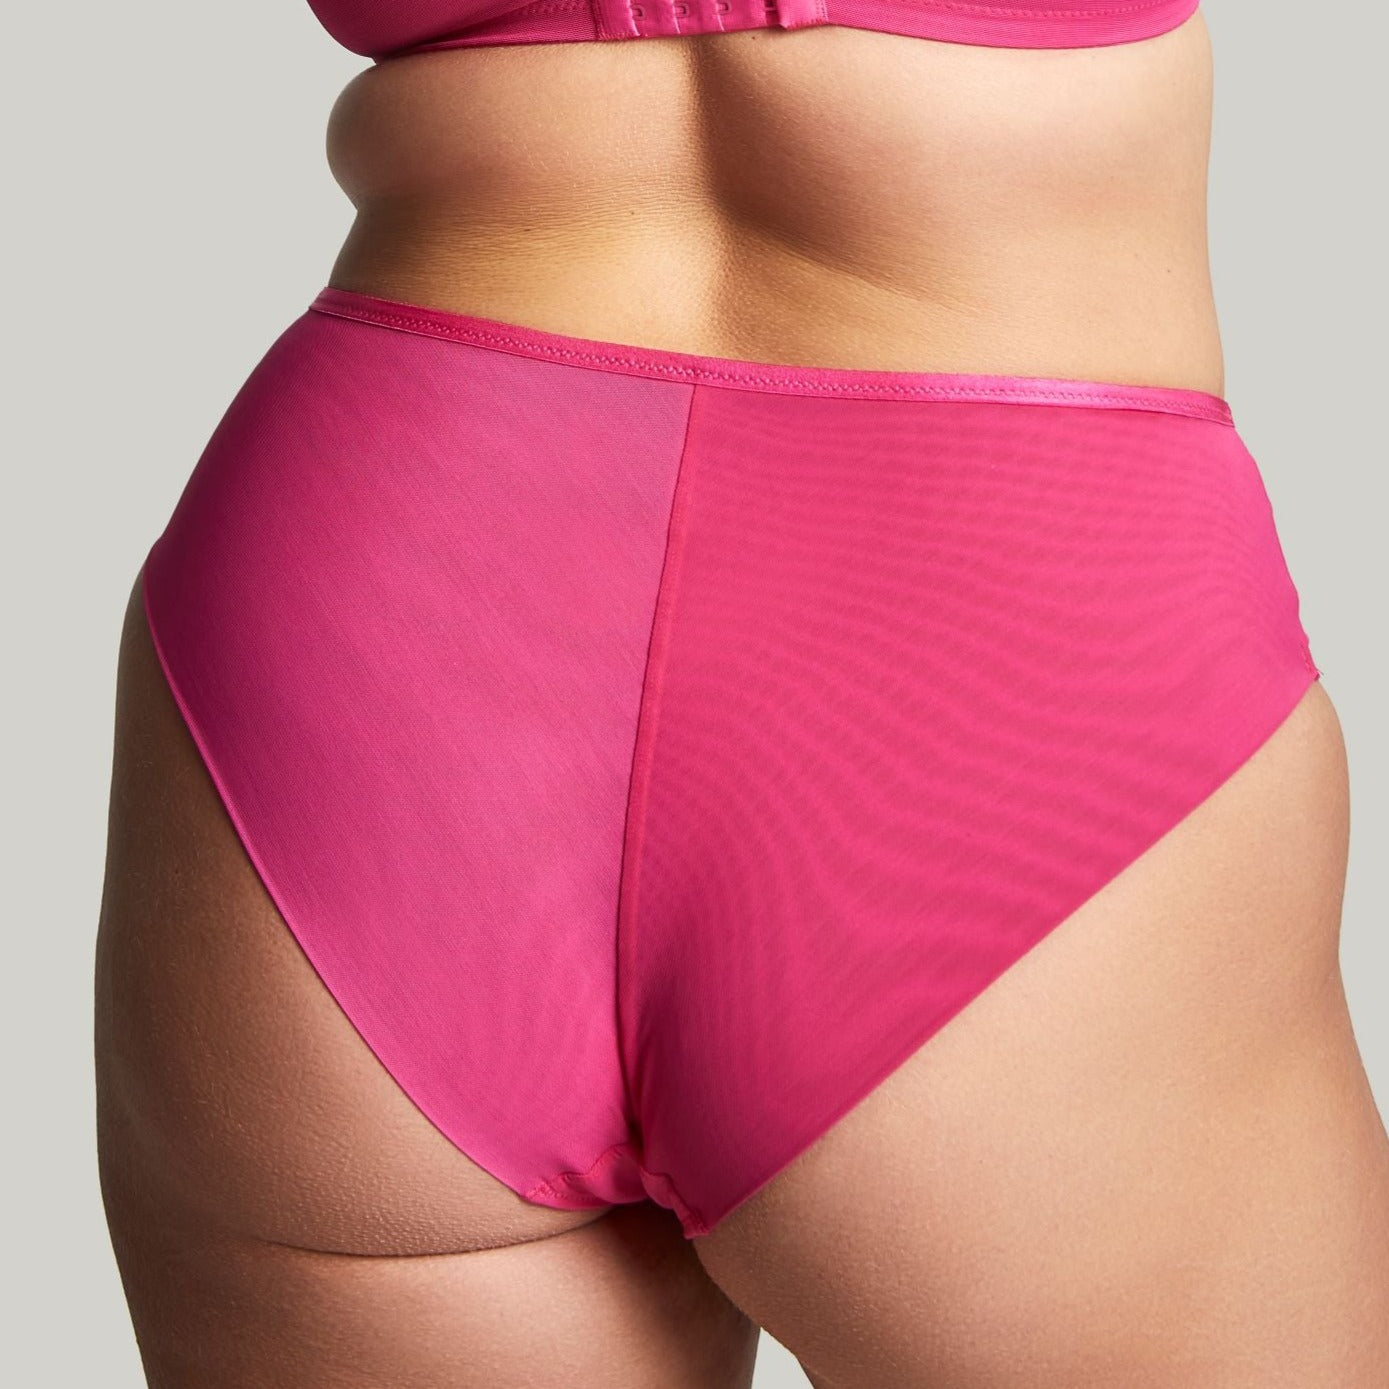 Harmony Deep Brief - 10834 - Hot Pink Bras & Lingerie - Underwear - Brief Panache   